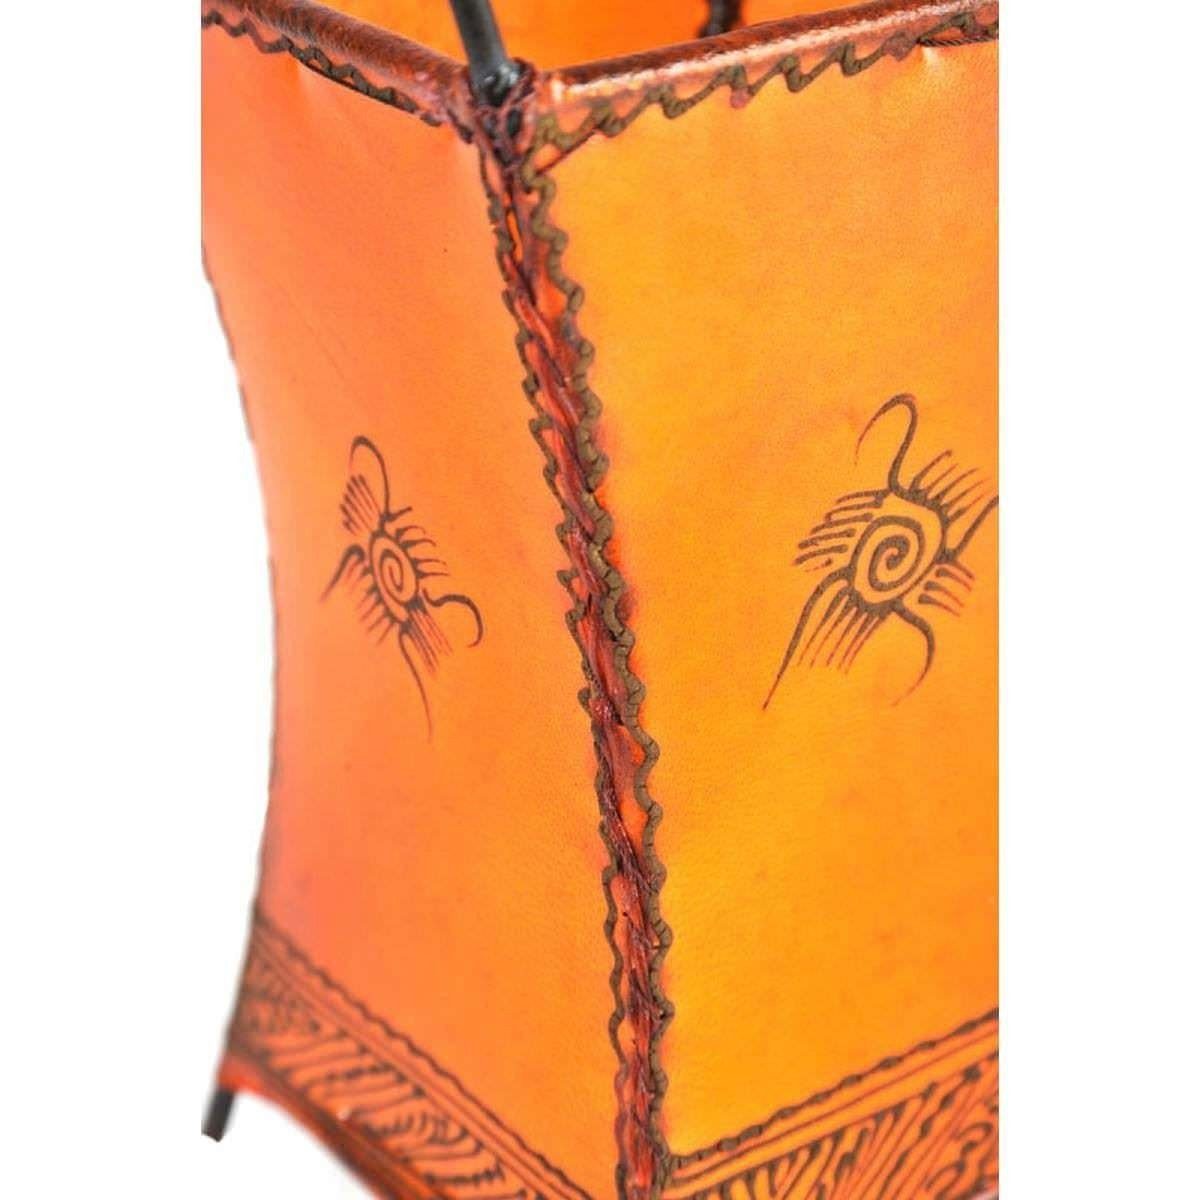 SIMANDRA Orange Lederlampe Warmweiß, Stehlampe Ambilight, marokkanische Carree Sonne, ohne Leuchtmittel,